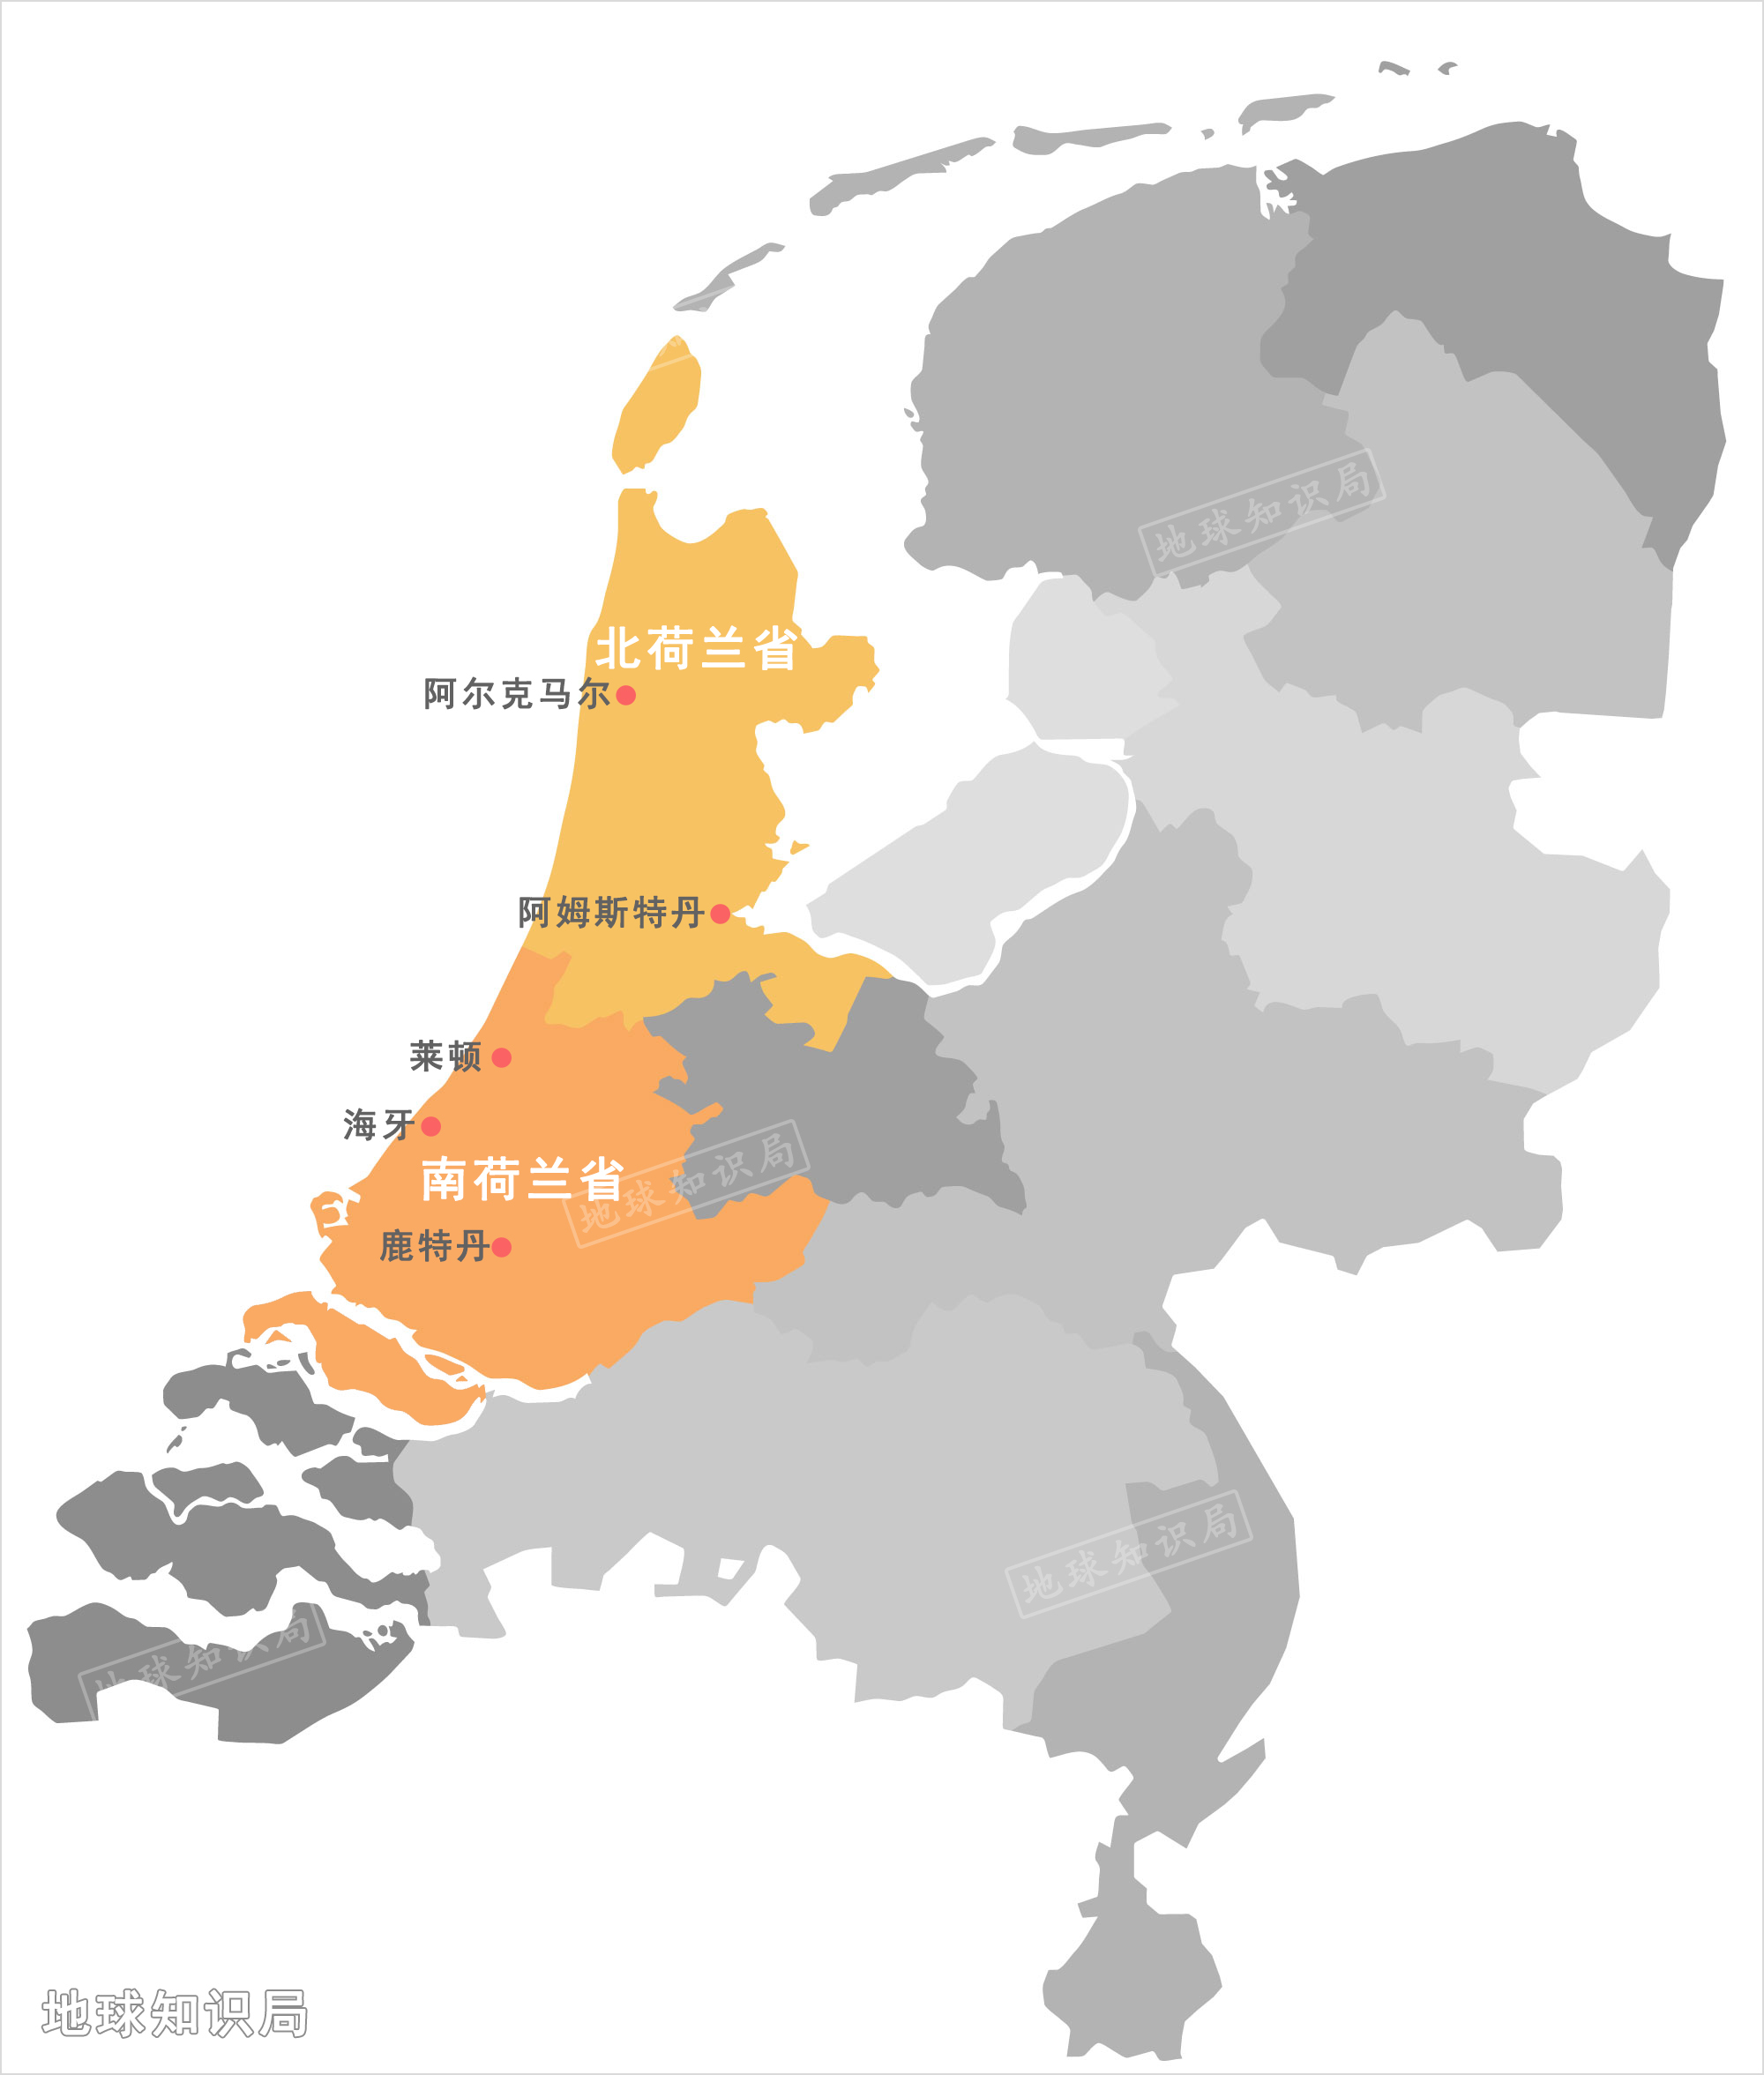 (现代荷兰政区示意,现在的南北荷兰省大致为曾经的荷兰伯国)▼人口